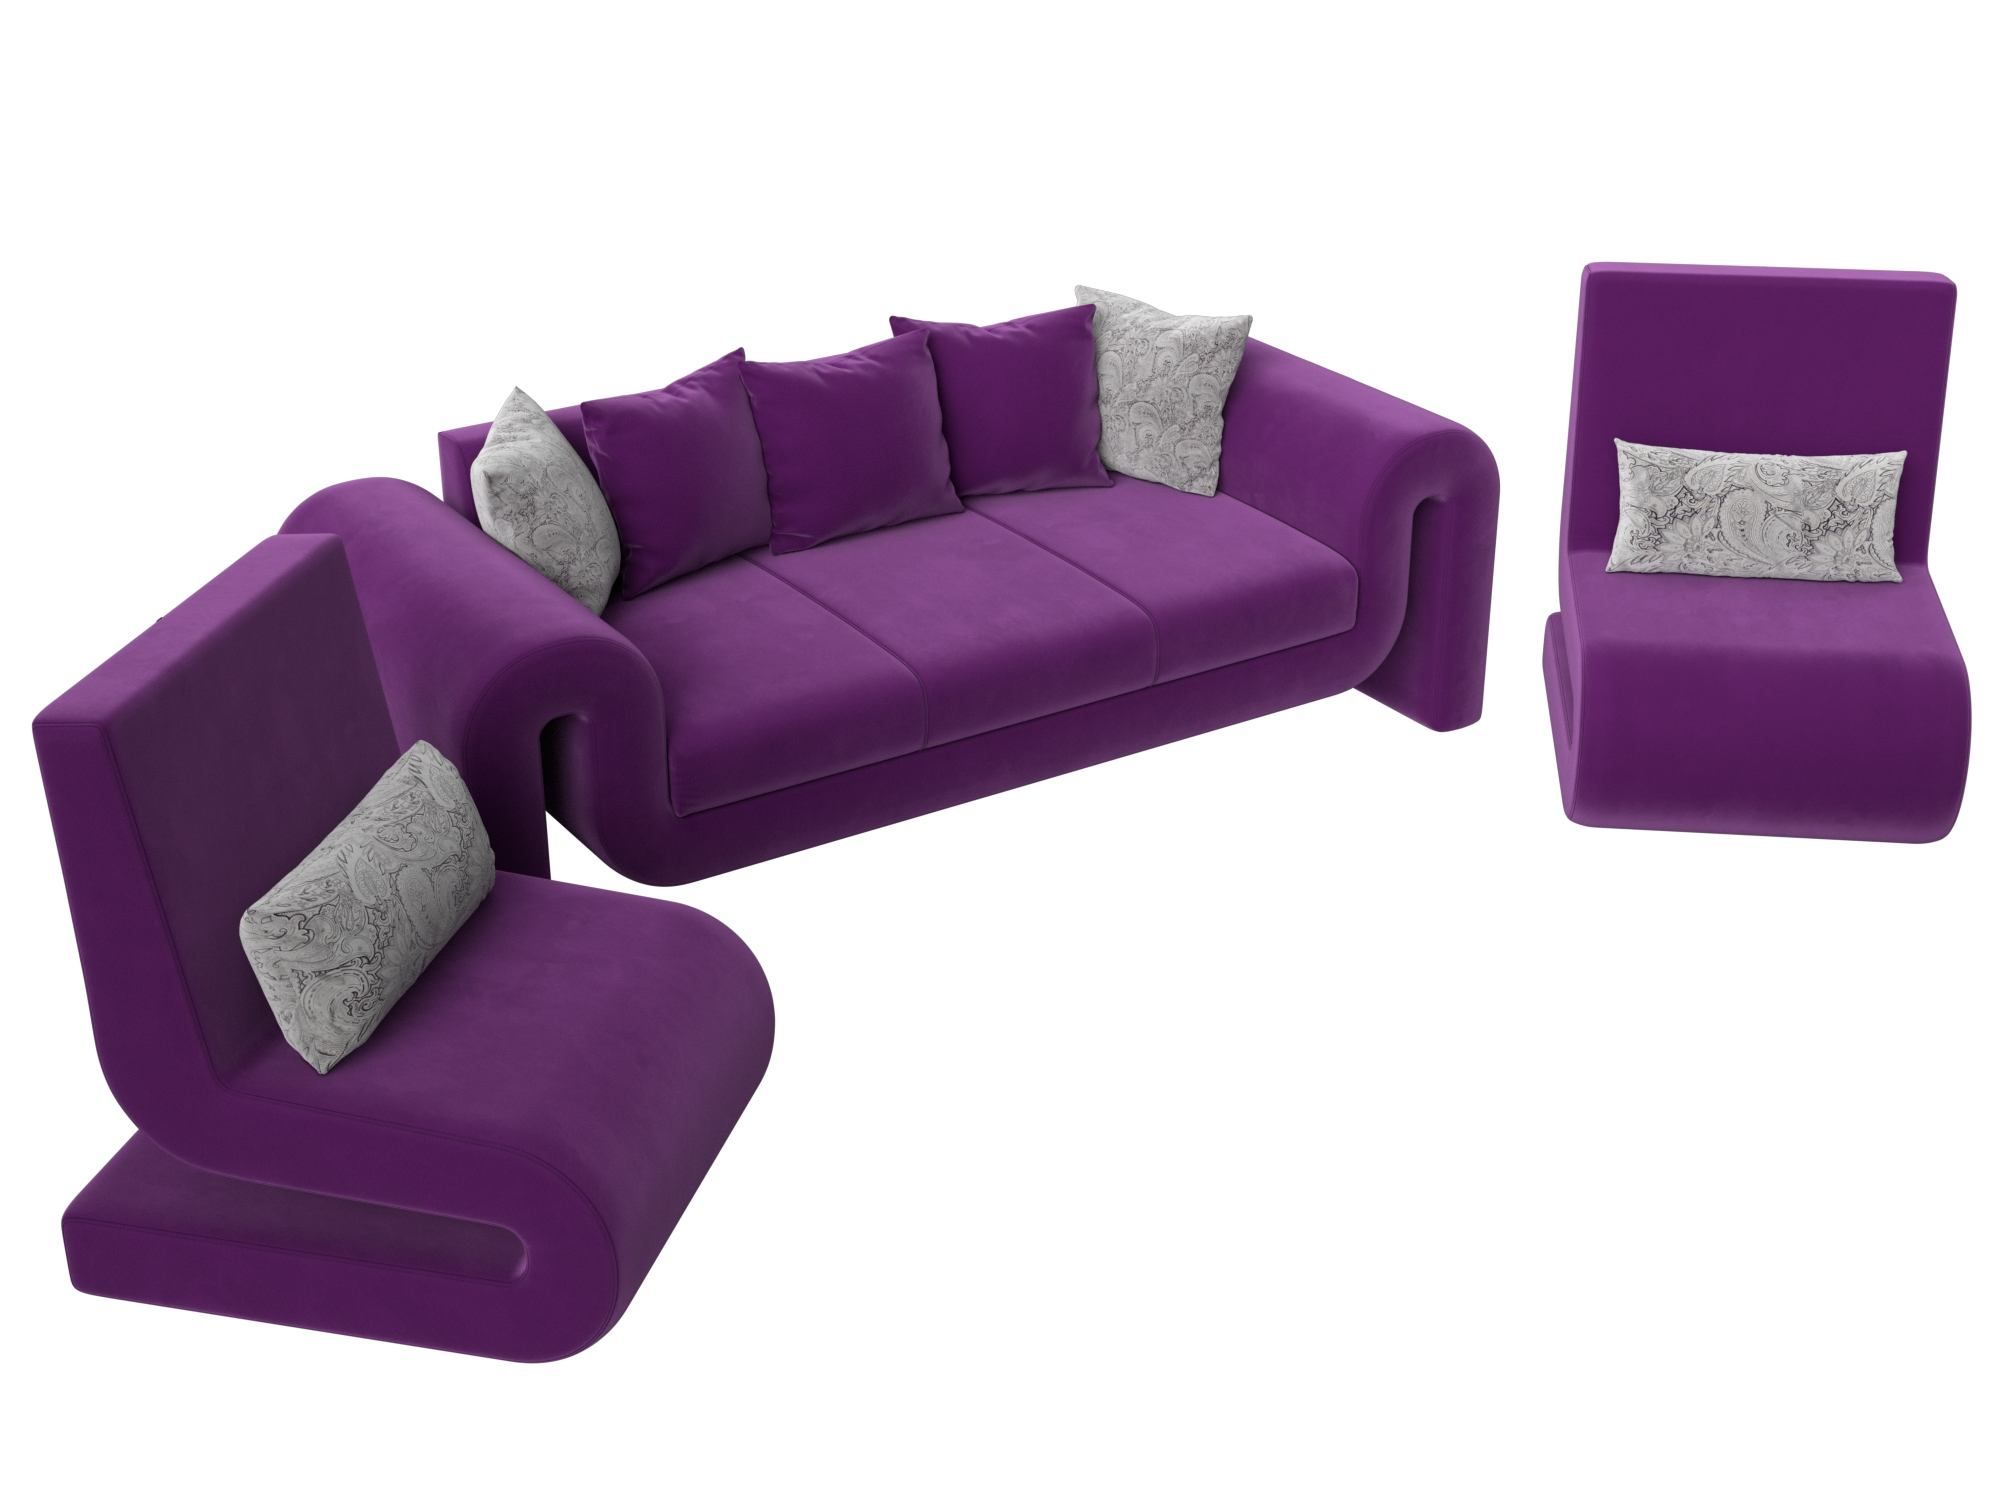 Набор «Волна-1» (диван, 2 кресла) Фиолетовый, Микровельвет микровельветфиолетовый купить от 99980 руб. в интернет-магазине Фабрики PUSHE в Москве